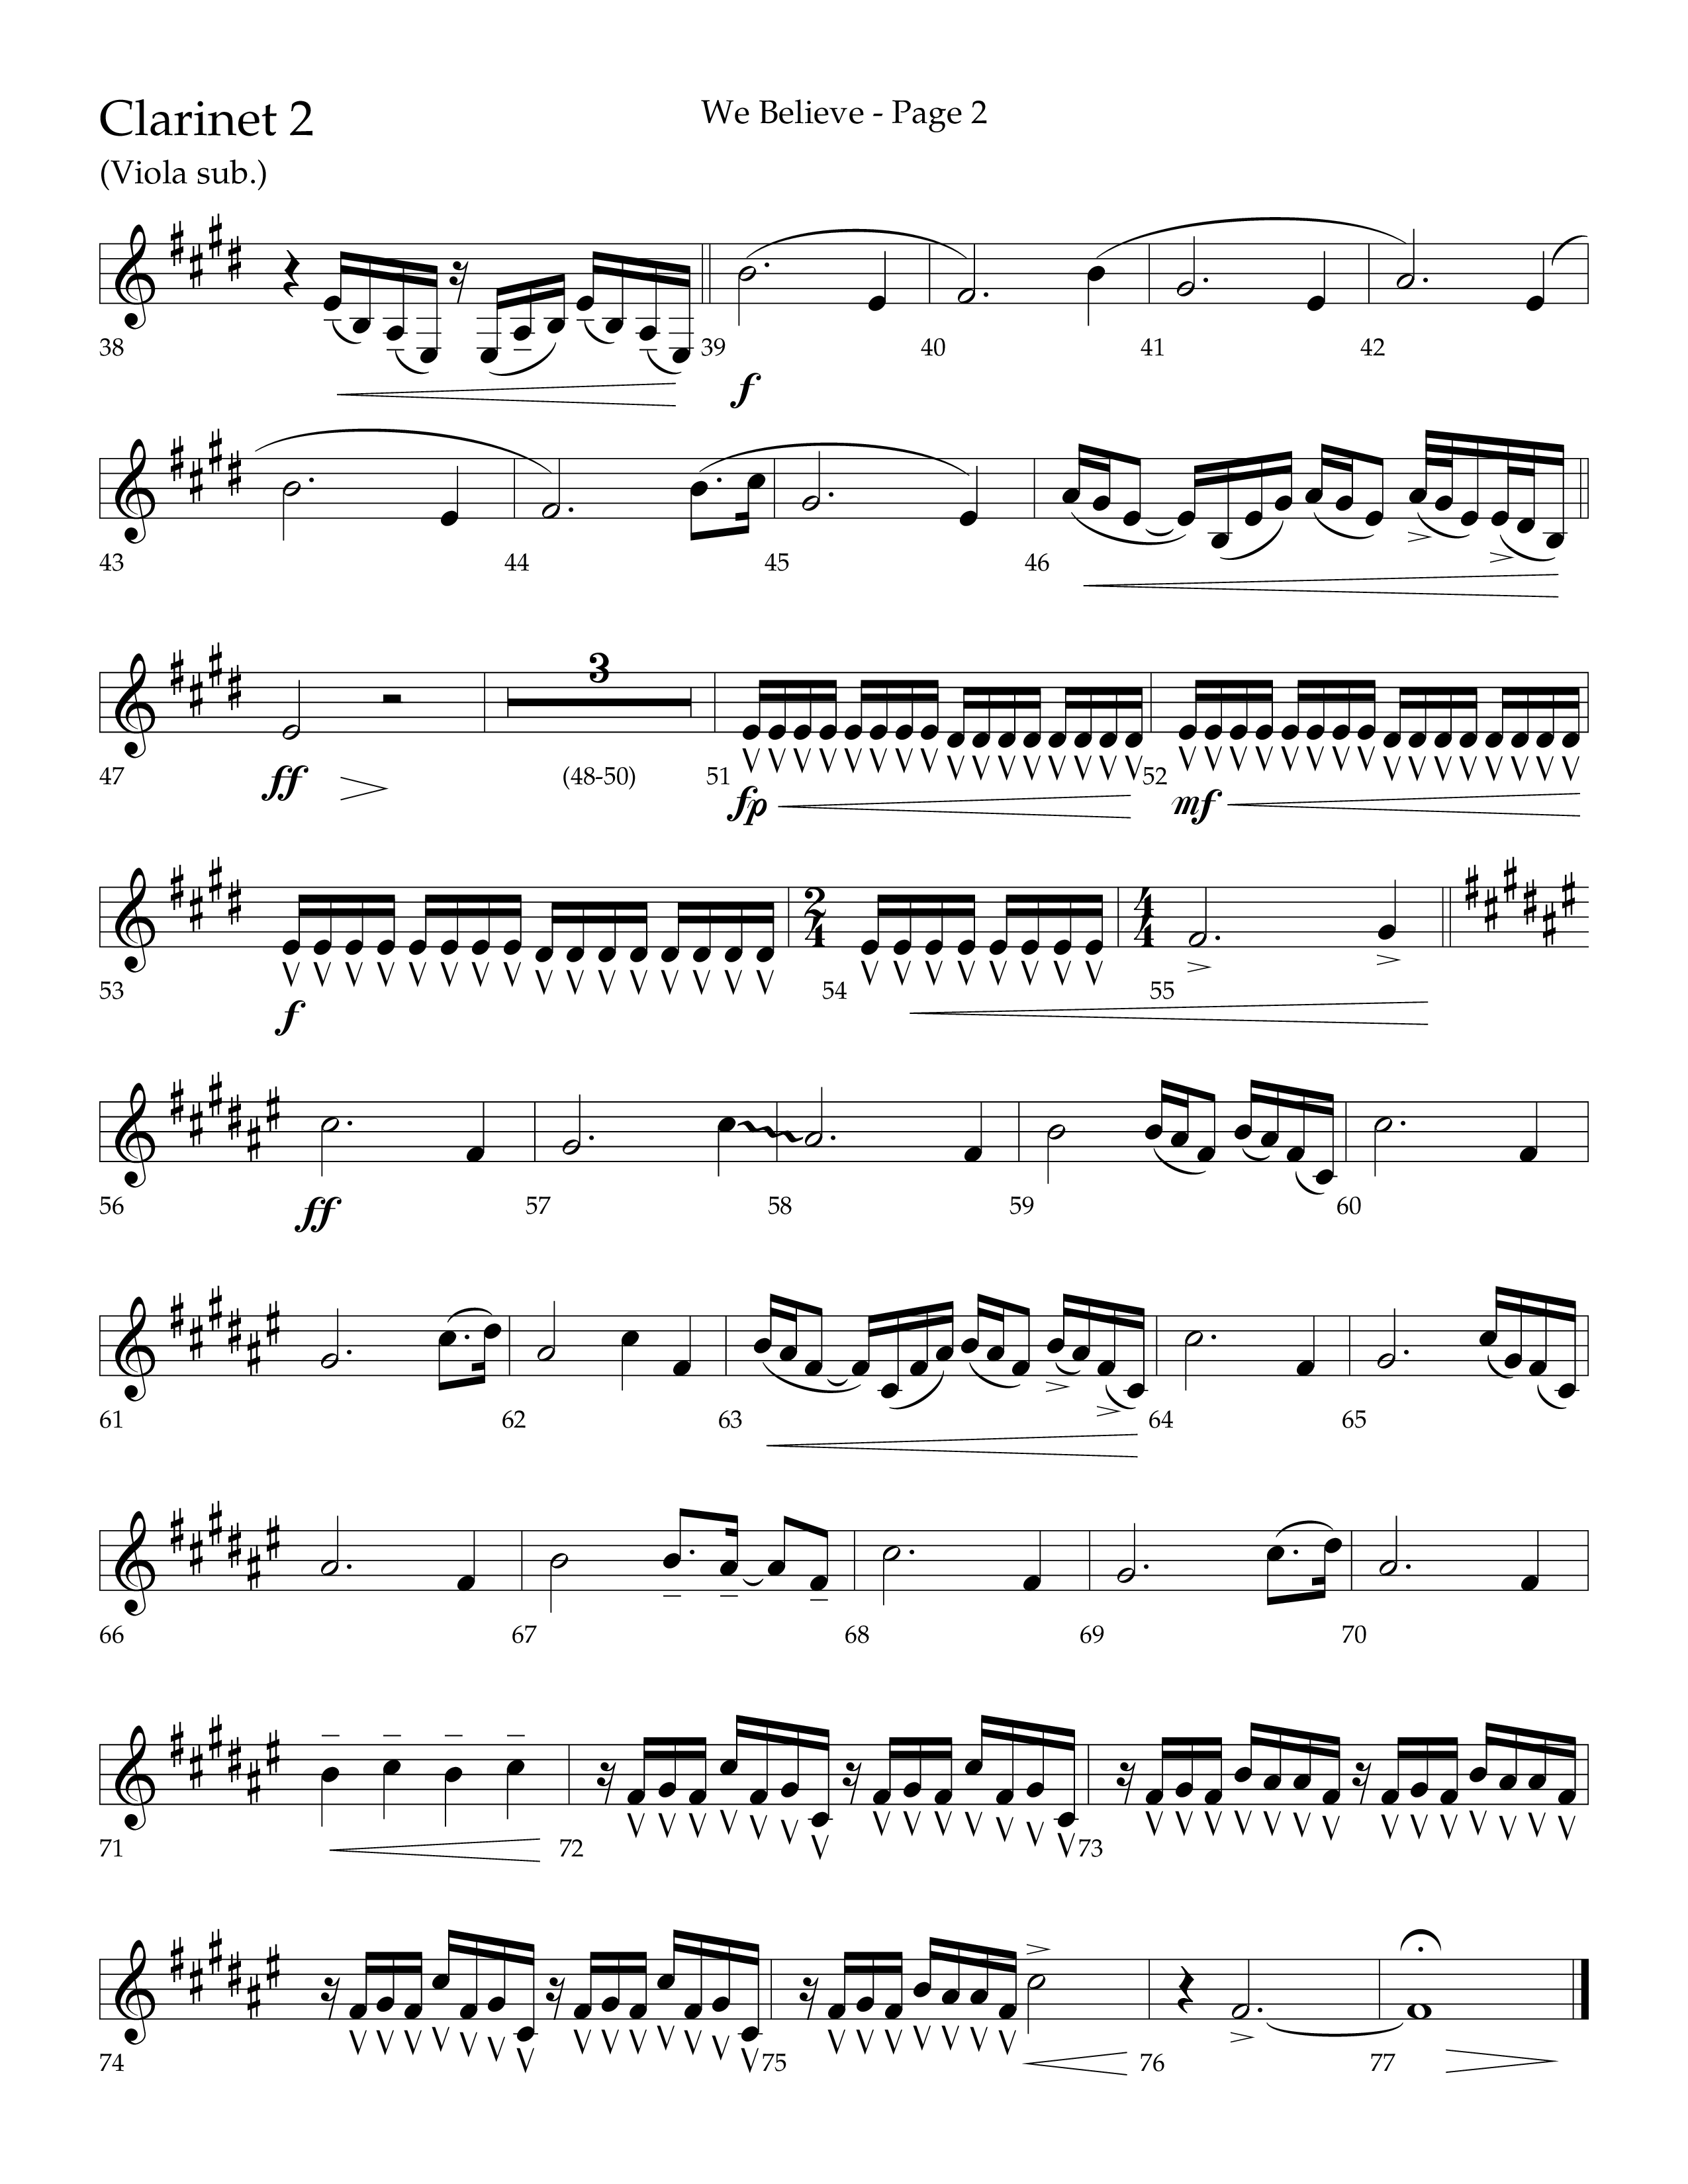 We Believe (Choral Anthem SATB) Clarinet 1/2 (Lifeway Choral / Arr. Cliff Duren)